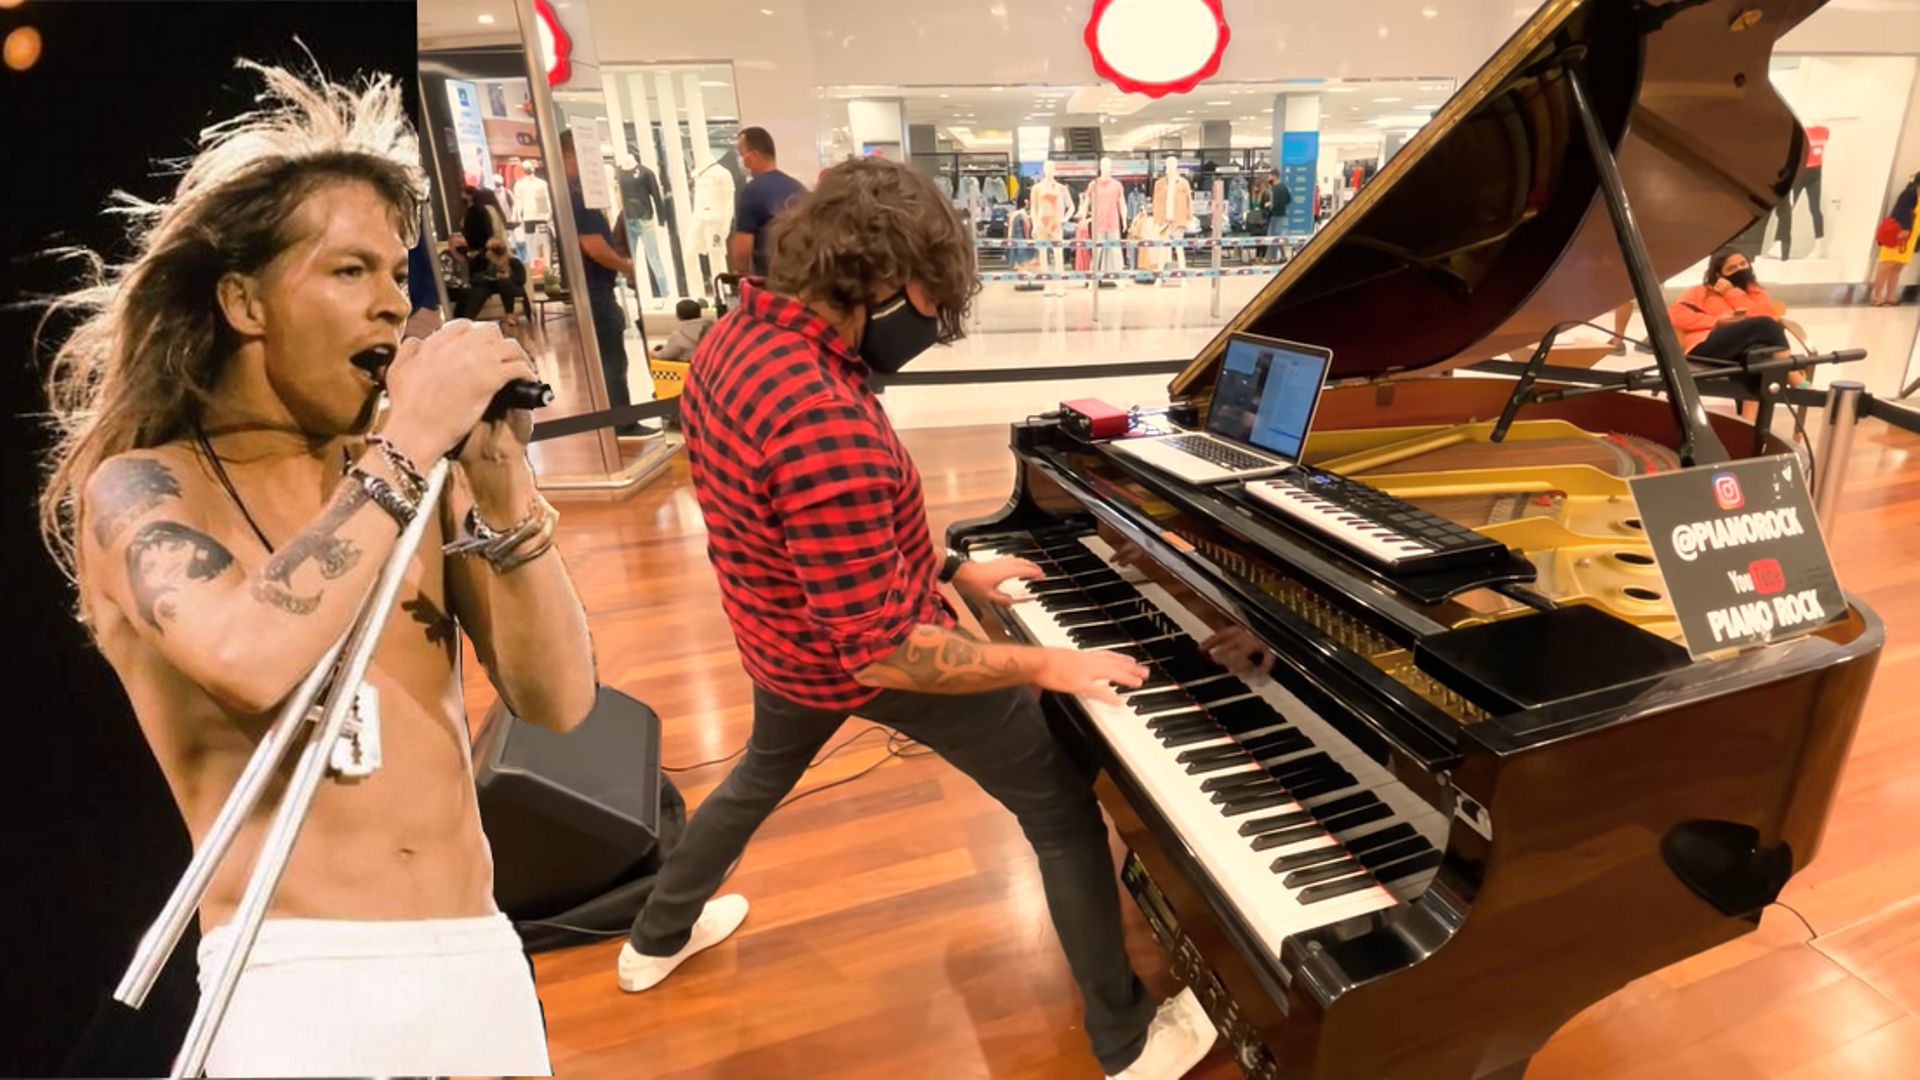 Guns N' Roses : une reprise puissante au piano de "Sweet Child O' Mine" dans un centre commercial